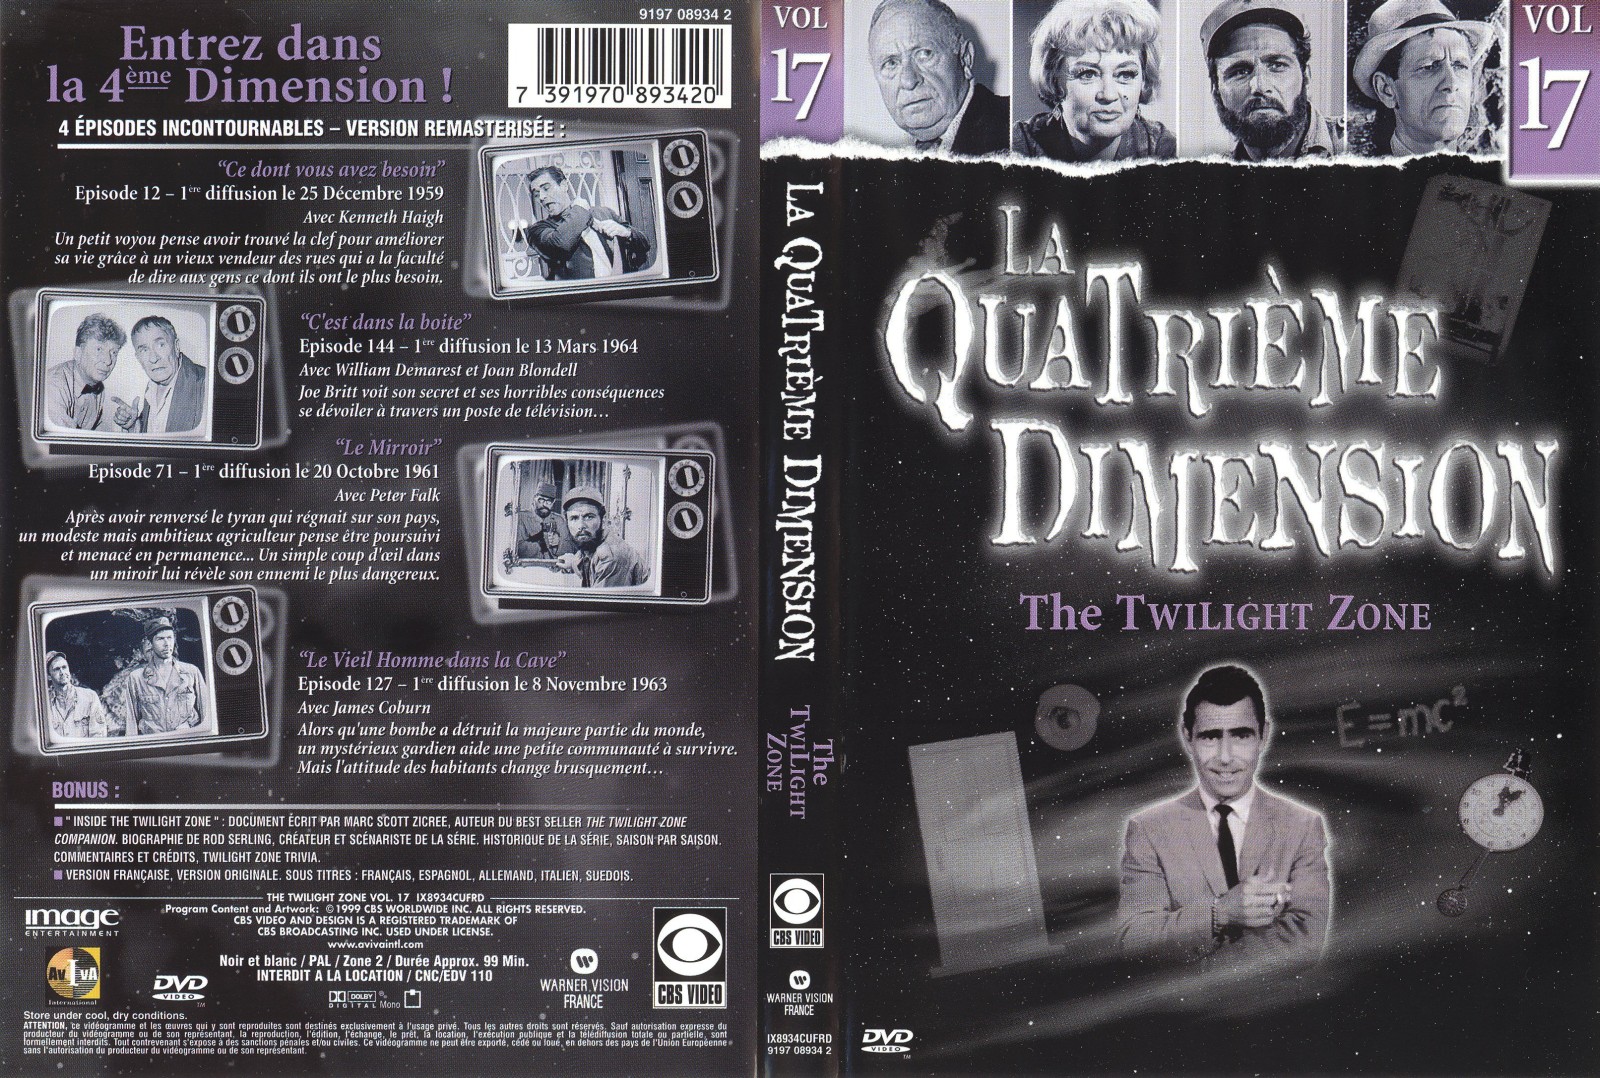 Jaquette DVD La quatrieme dimension vol 17